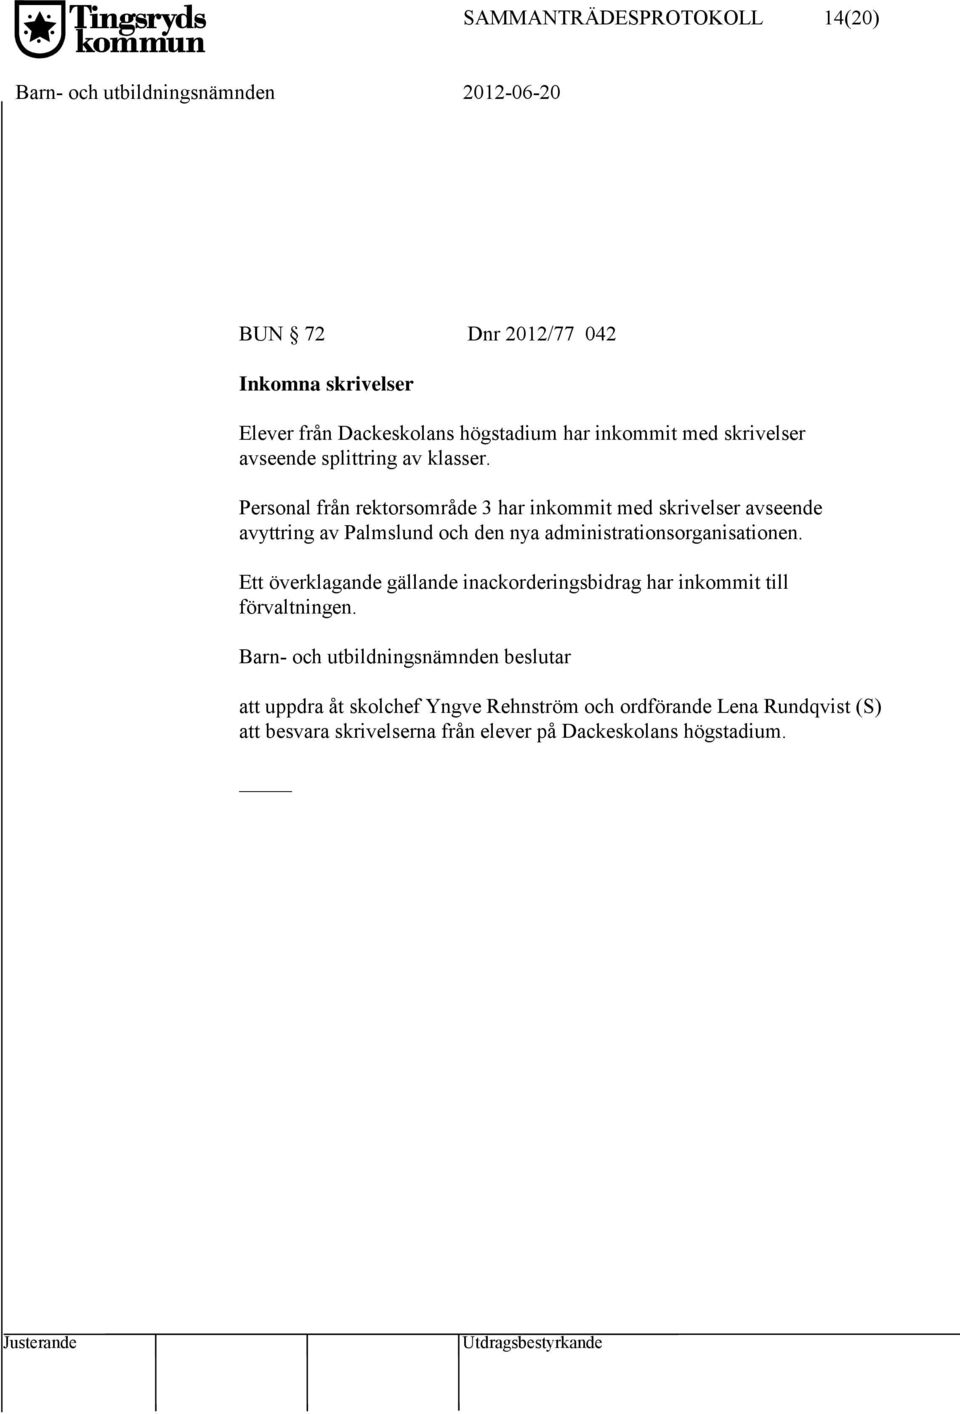 Personal från rektorsområde 3 har inkommit med skrivelser avseende avyttring av Palmslund och den nya